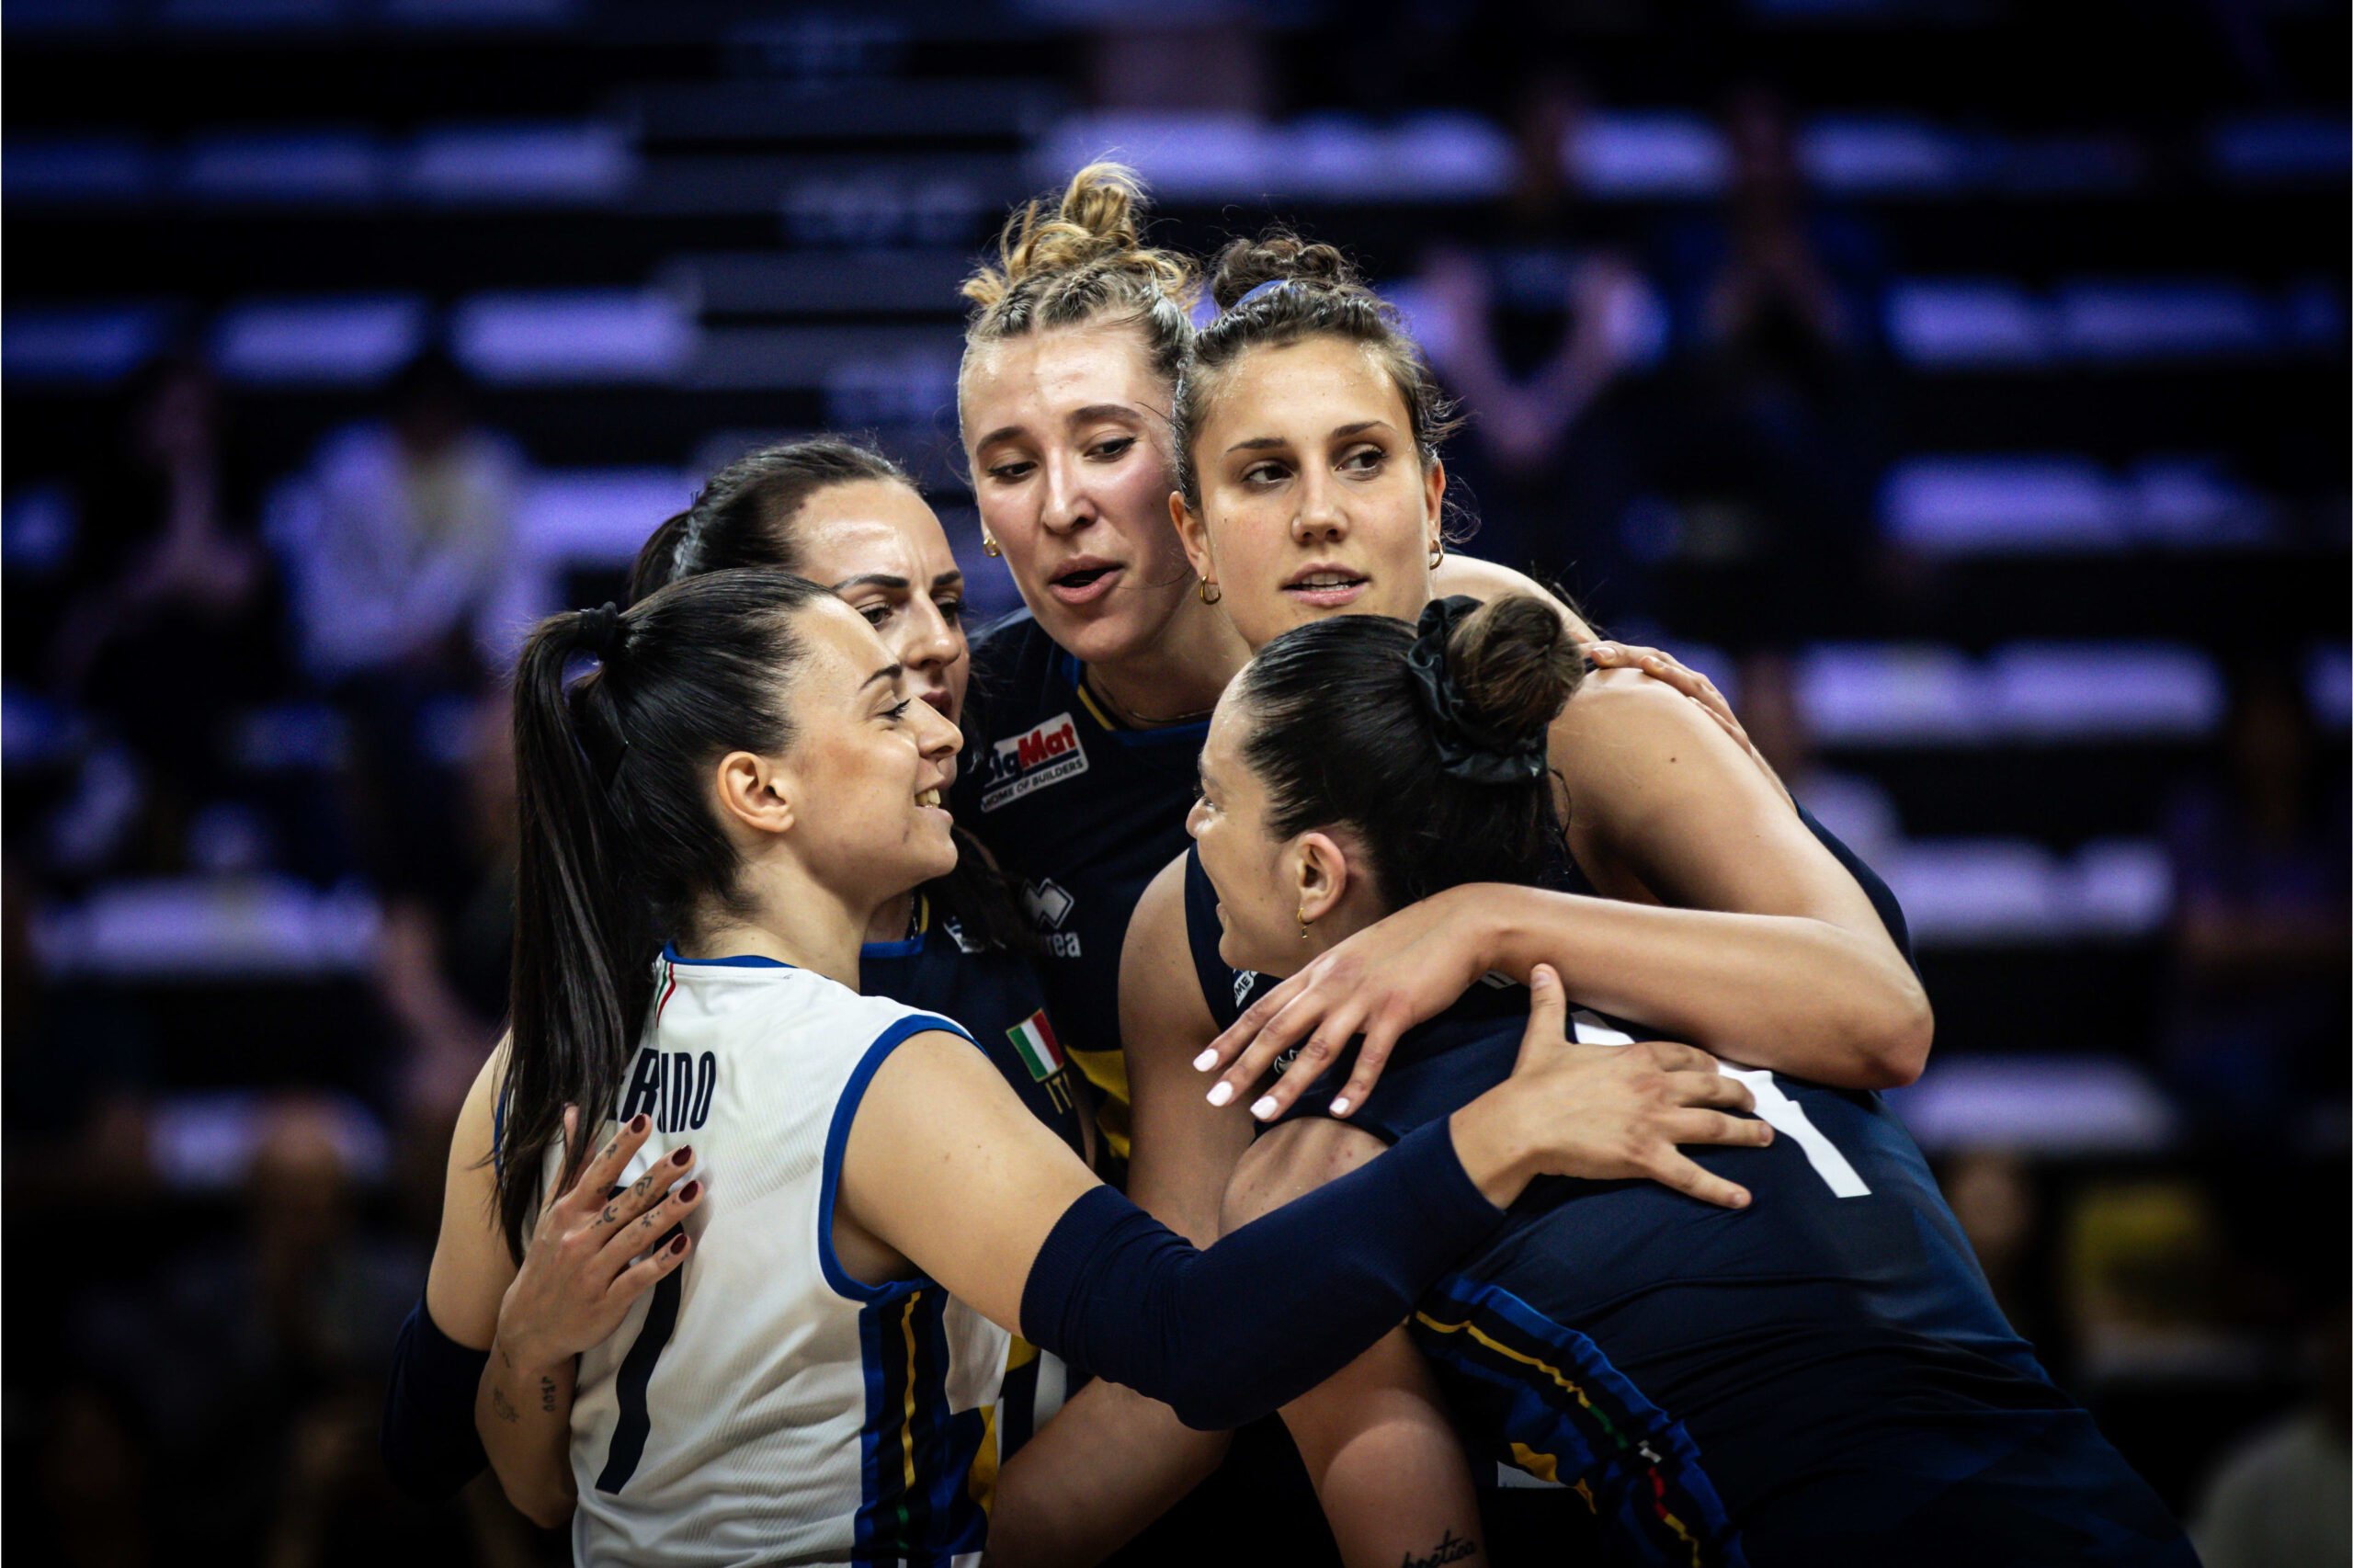 LIVE Italia Turchia 2 1, Nations League volley femminile in DIRETTA: le azzurre allungano nel quarto set